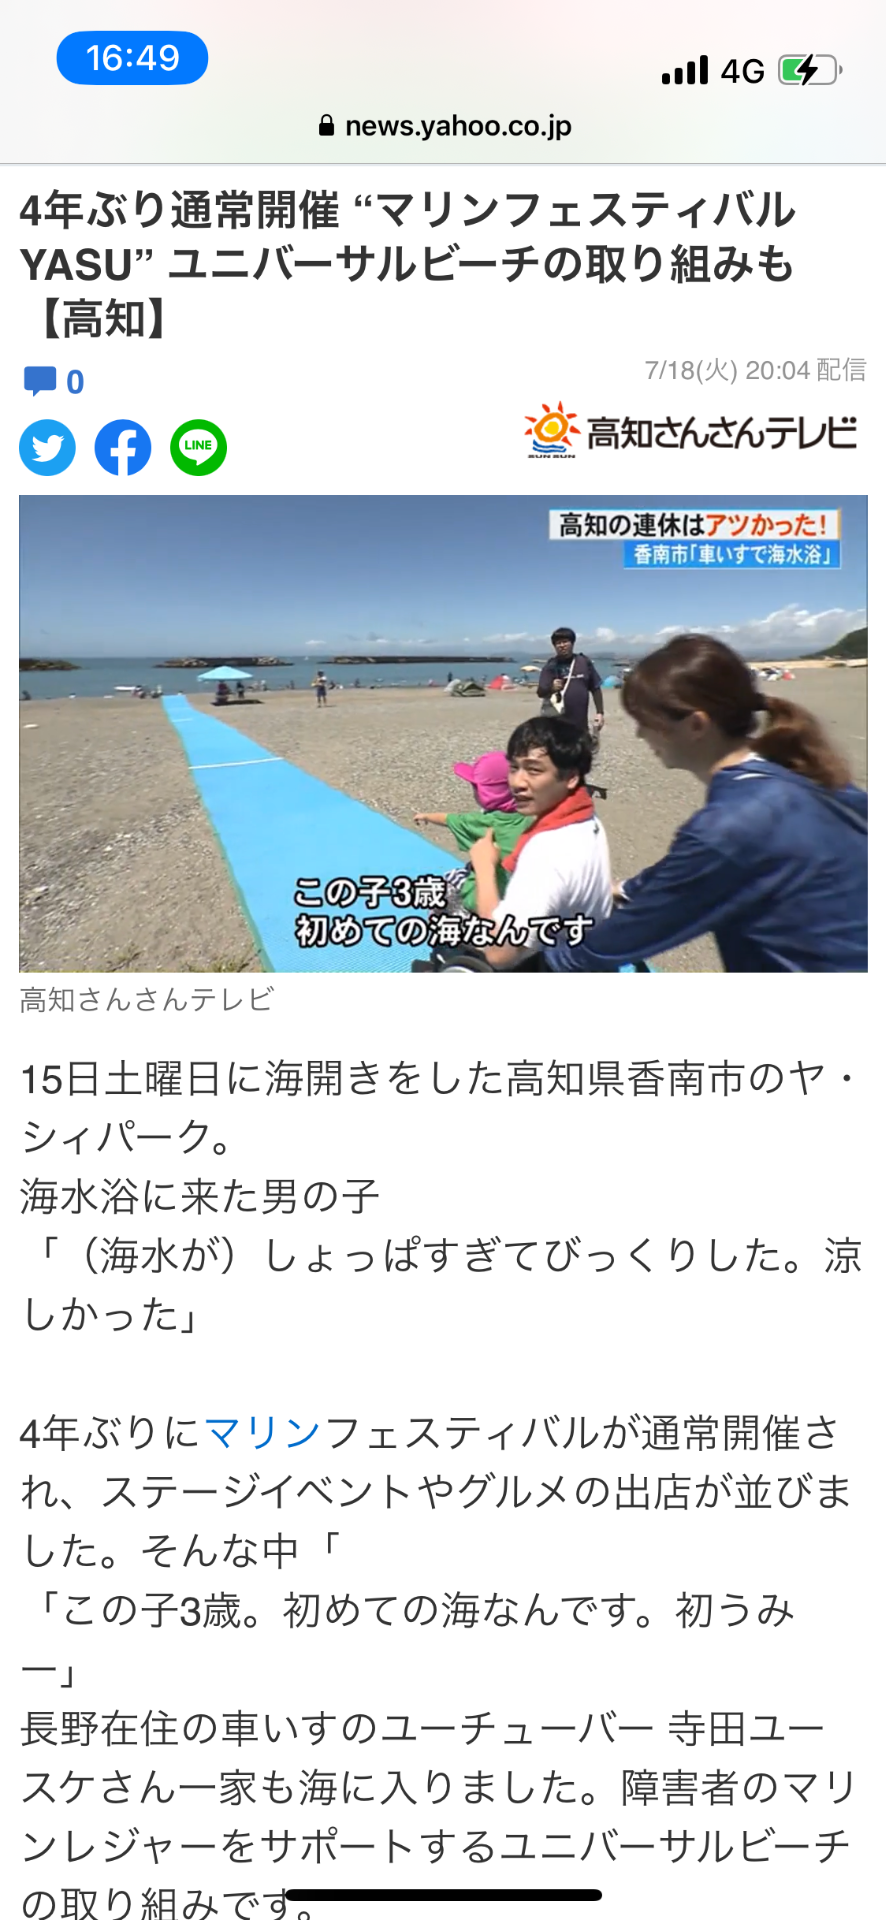 きょうだいプロジェクトのユニバーサルビーチ体験会を高知さんさんテレビさんに放送していただきました！